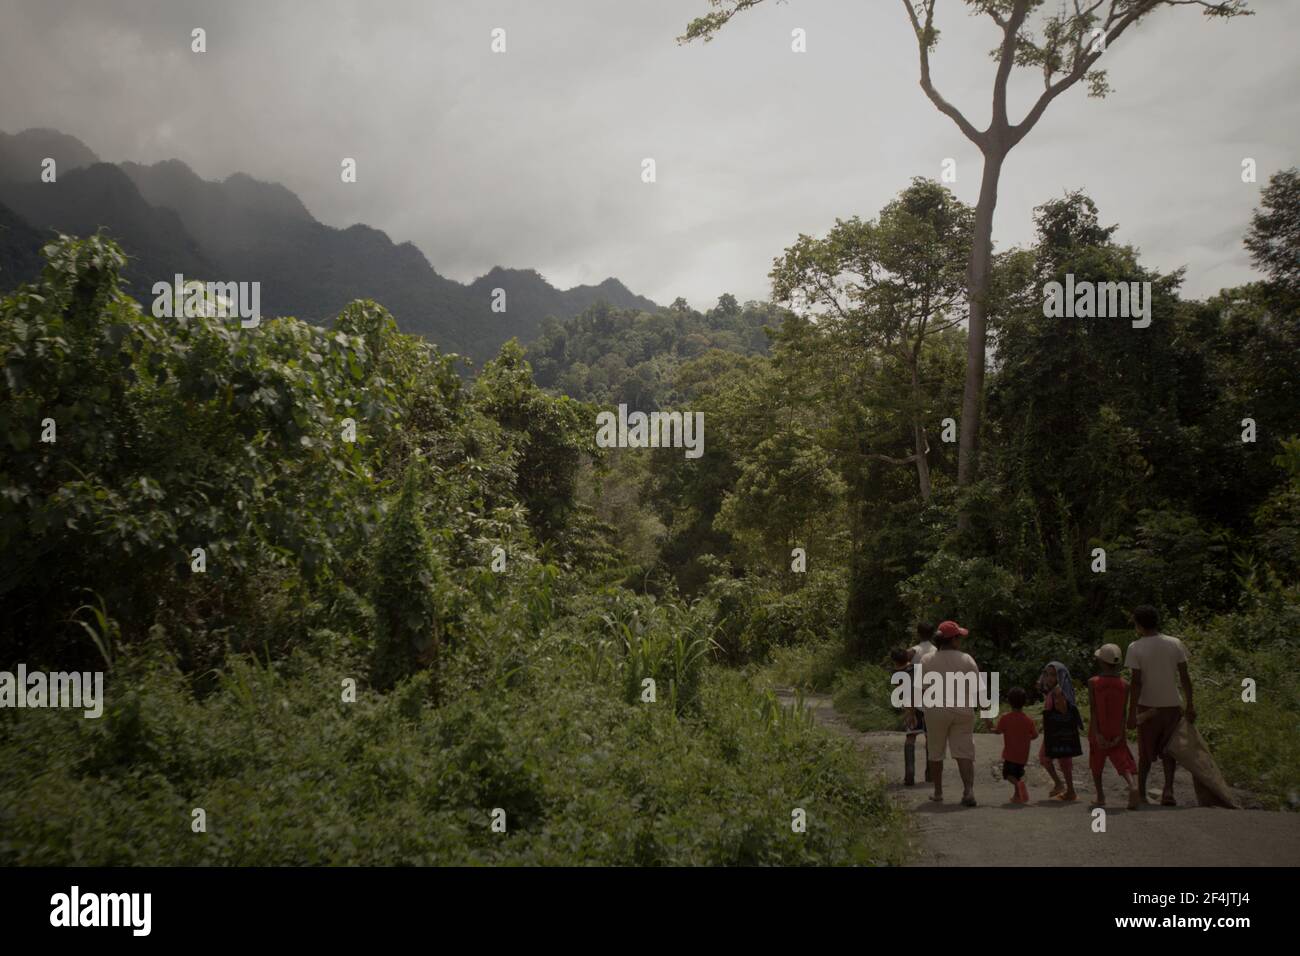 Femmes et enfants marchant sur la route rurale près de Sawai dans le nord de Seram, le centre de Maluku, Maluku, Indonésie. La forêt tropicale des basses terres et les sommets de montagne en bordure du parc national de Manusela sont vus au loin. La restauration ou le maintien de la terre dans sa forme naturelle est généralement plus bénéfique économiquement que la conversion de la terre pour des activités humaines comme l'exploitation forestière ou l'agriculture, Inside Climate News rapporte sur 13 mars 2021, affirmant avec audace que « sur la plupart des terres naturelles, le développement est un perdant financier ». Banque D'Images